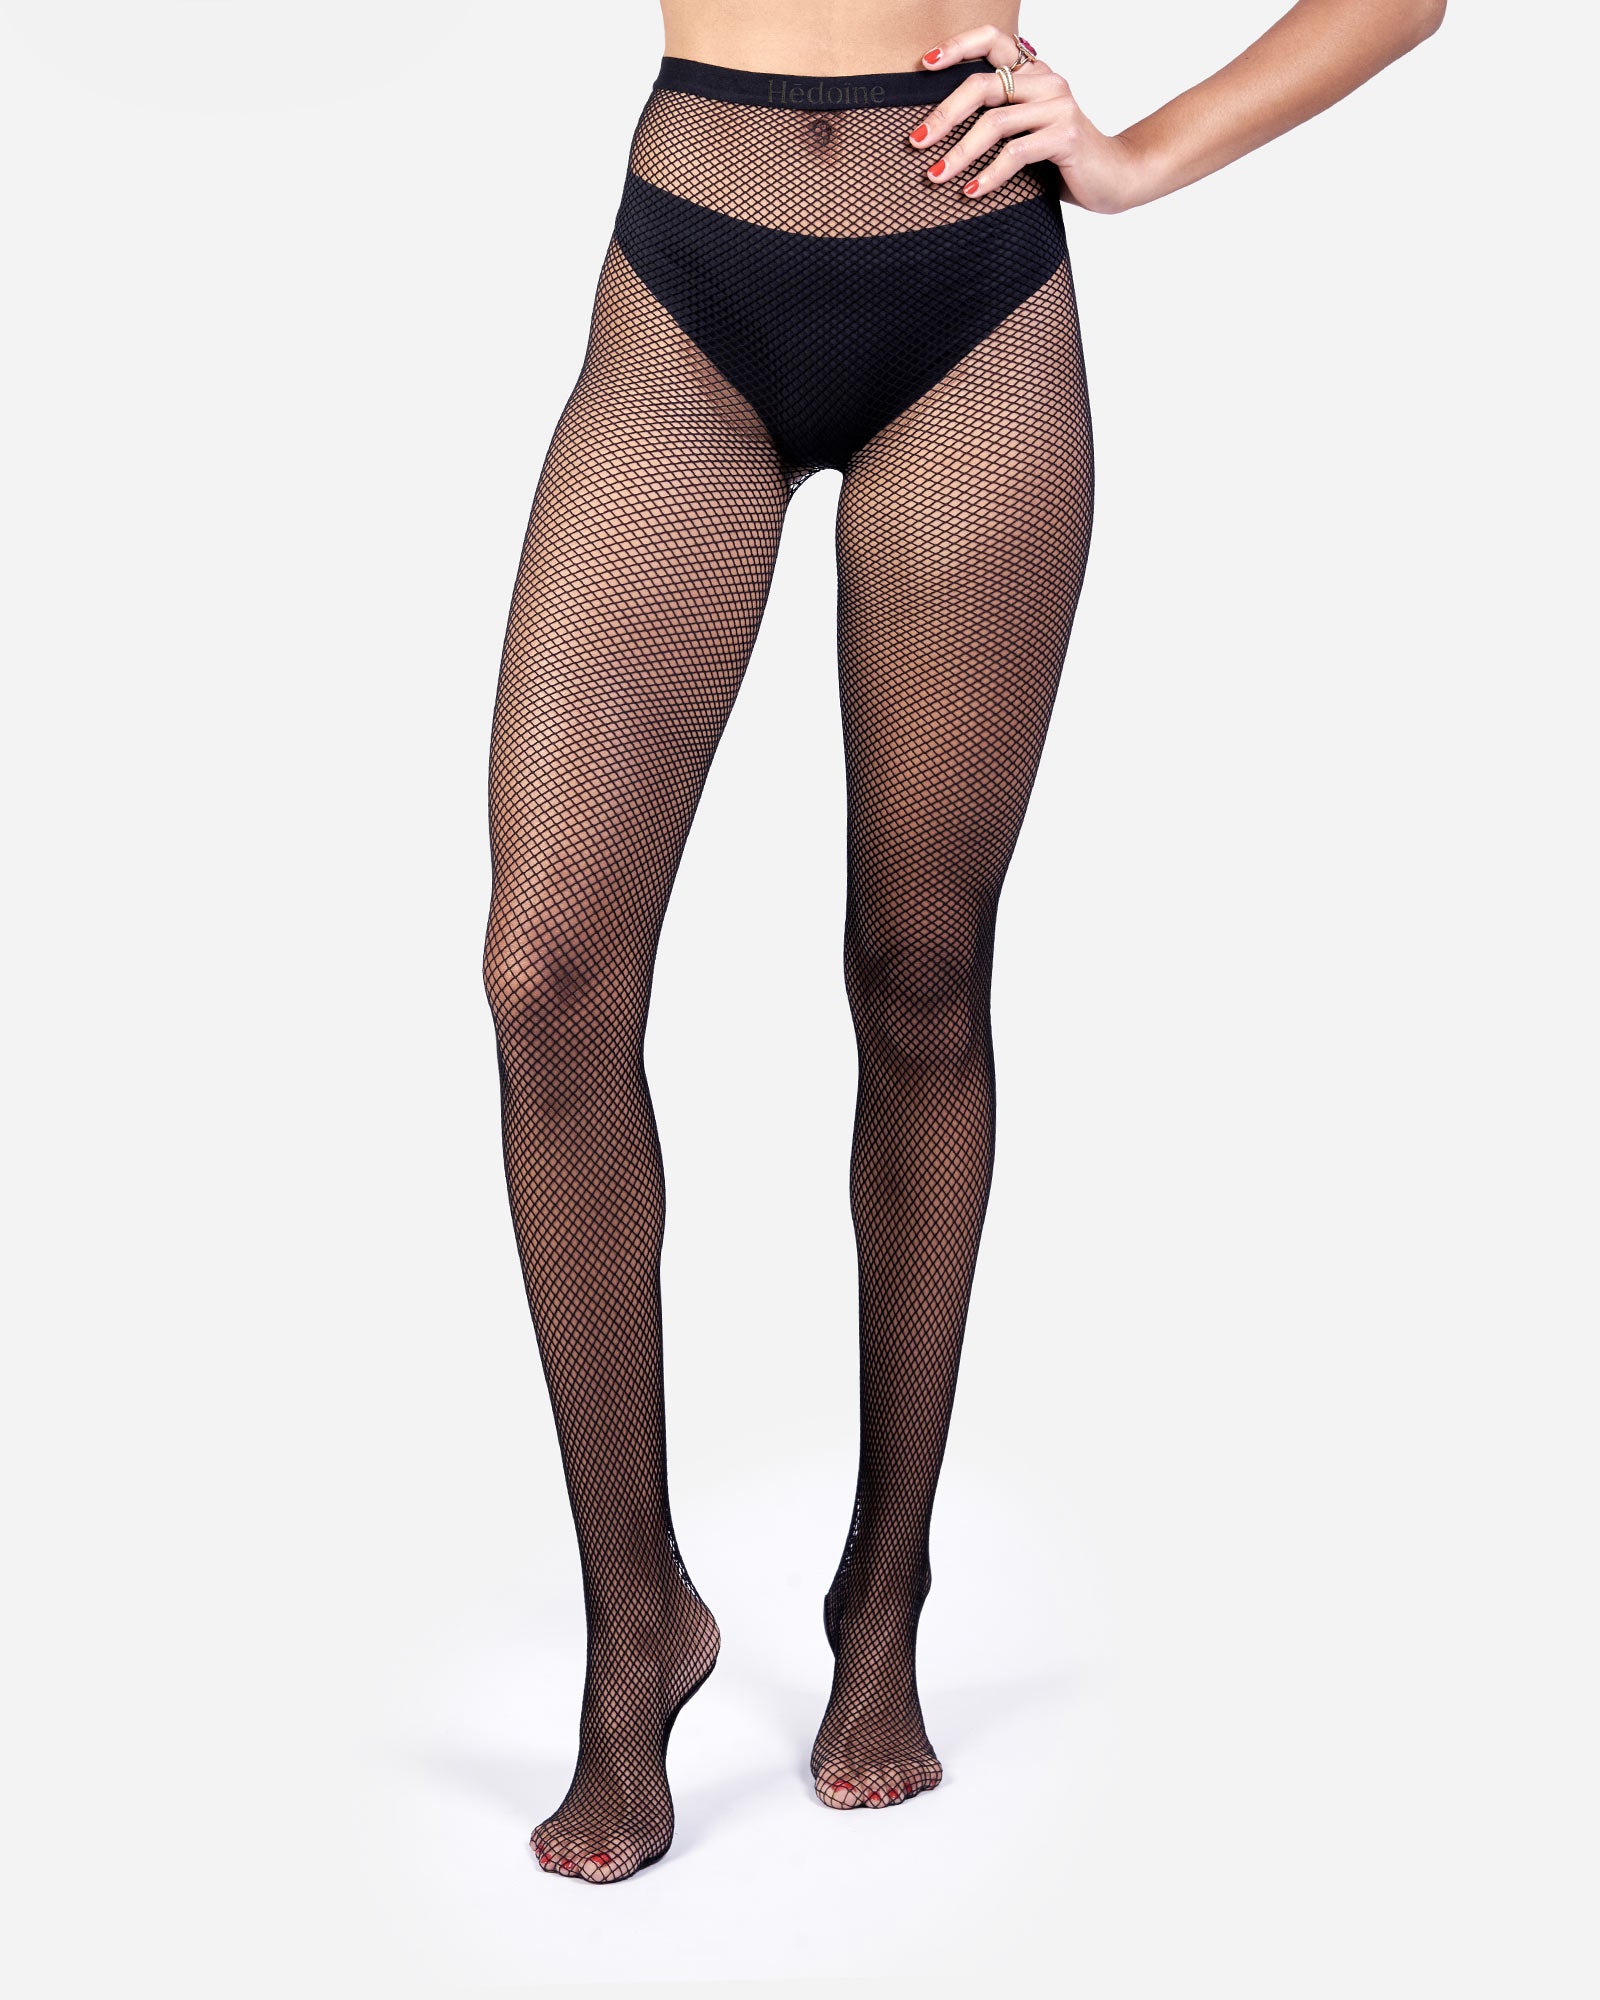  Black Stockings For Women - Black Tights For Women Sheer Black  Tights Sheer Tights Black Pantyhose For Women